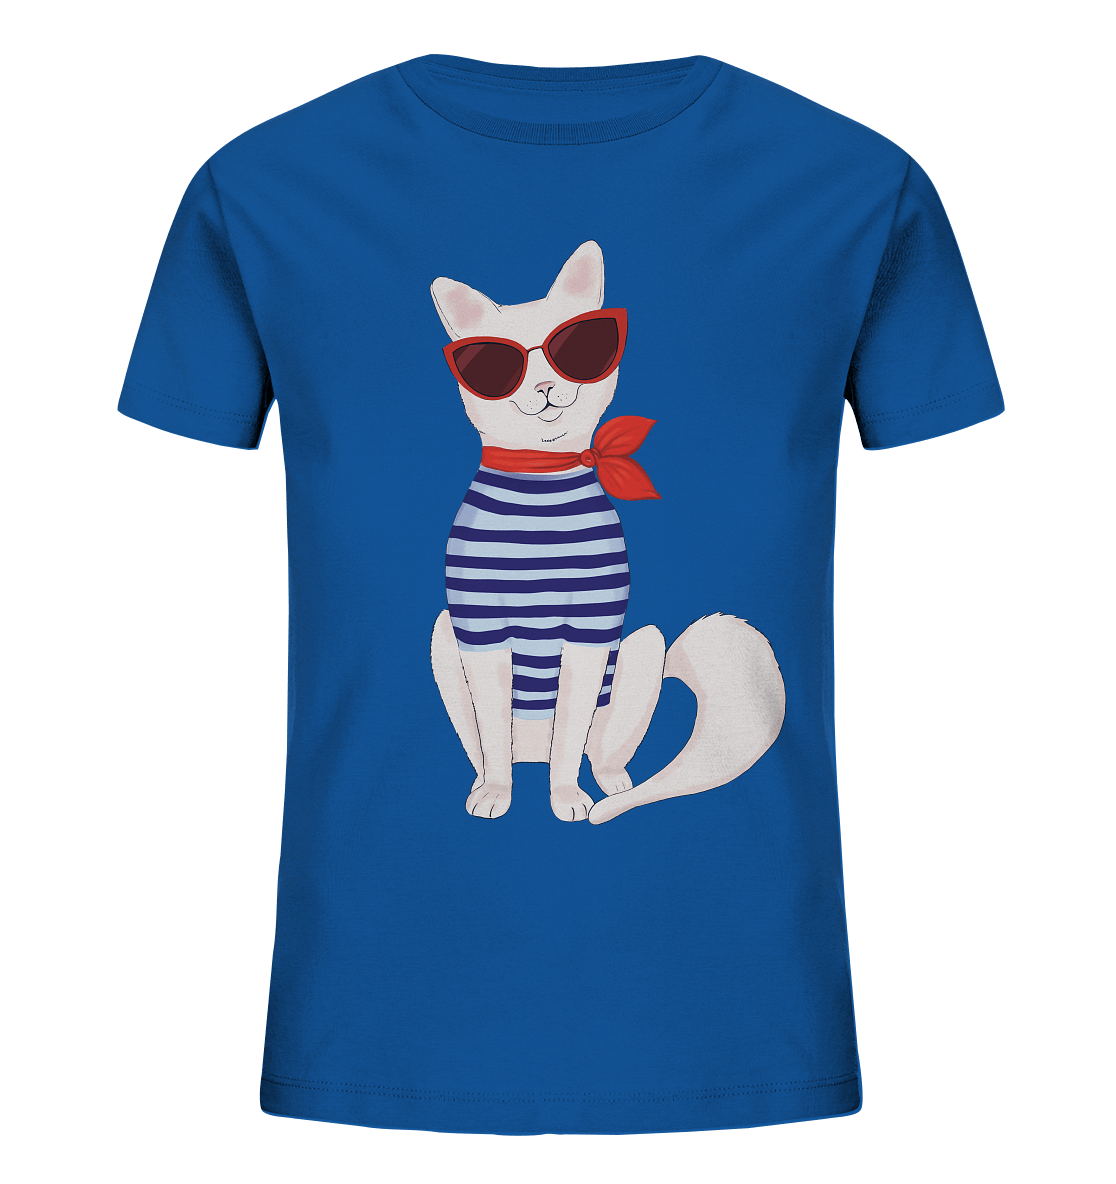 Katze T-Shirt in royal blue mit der coolen, modische Katze mit Matrosenshirt und roter Sonnenbrille im Cat Eye Style. 